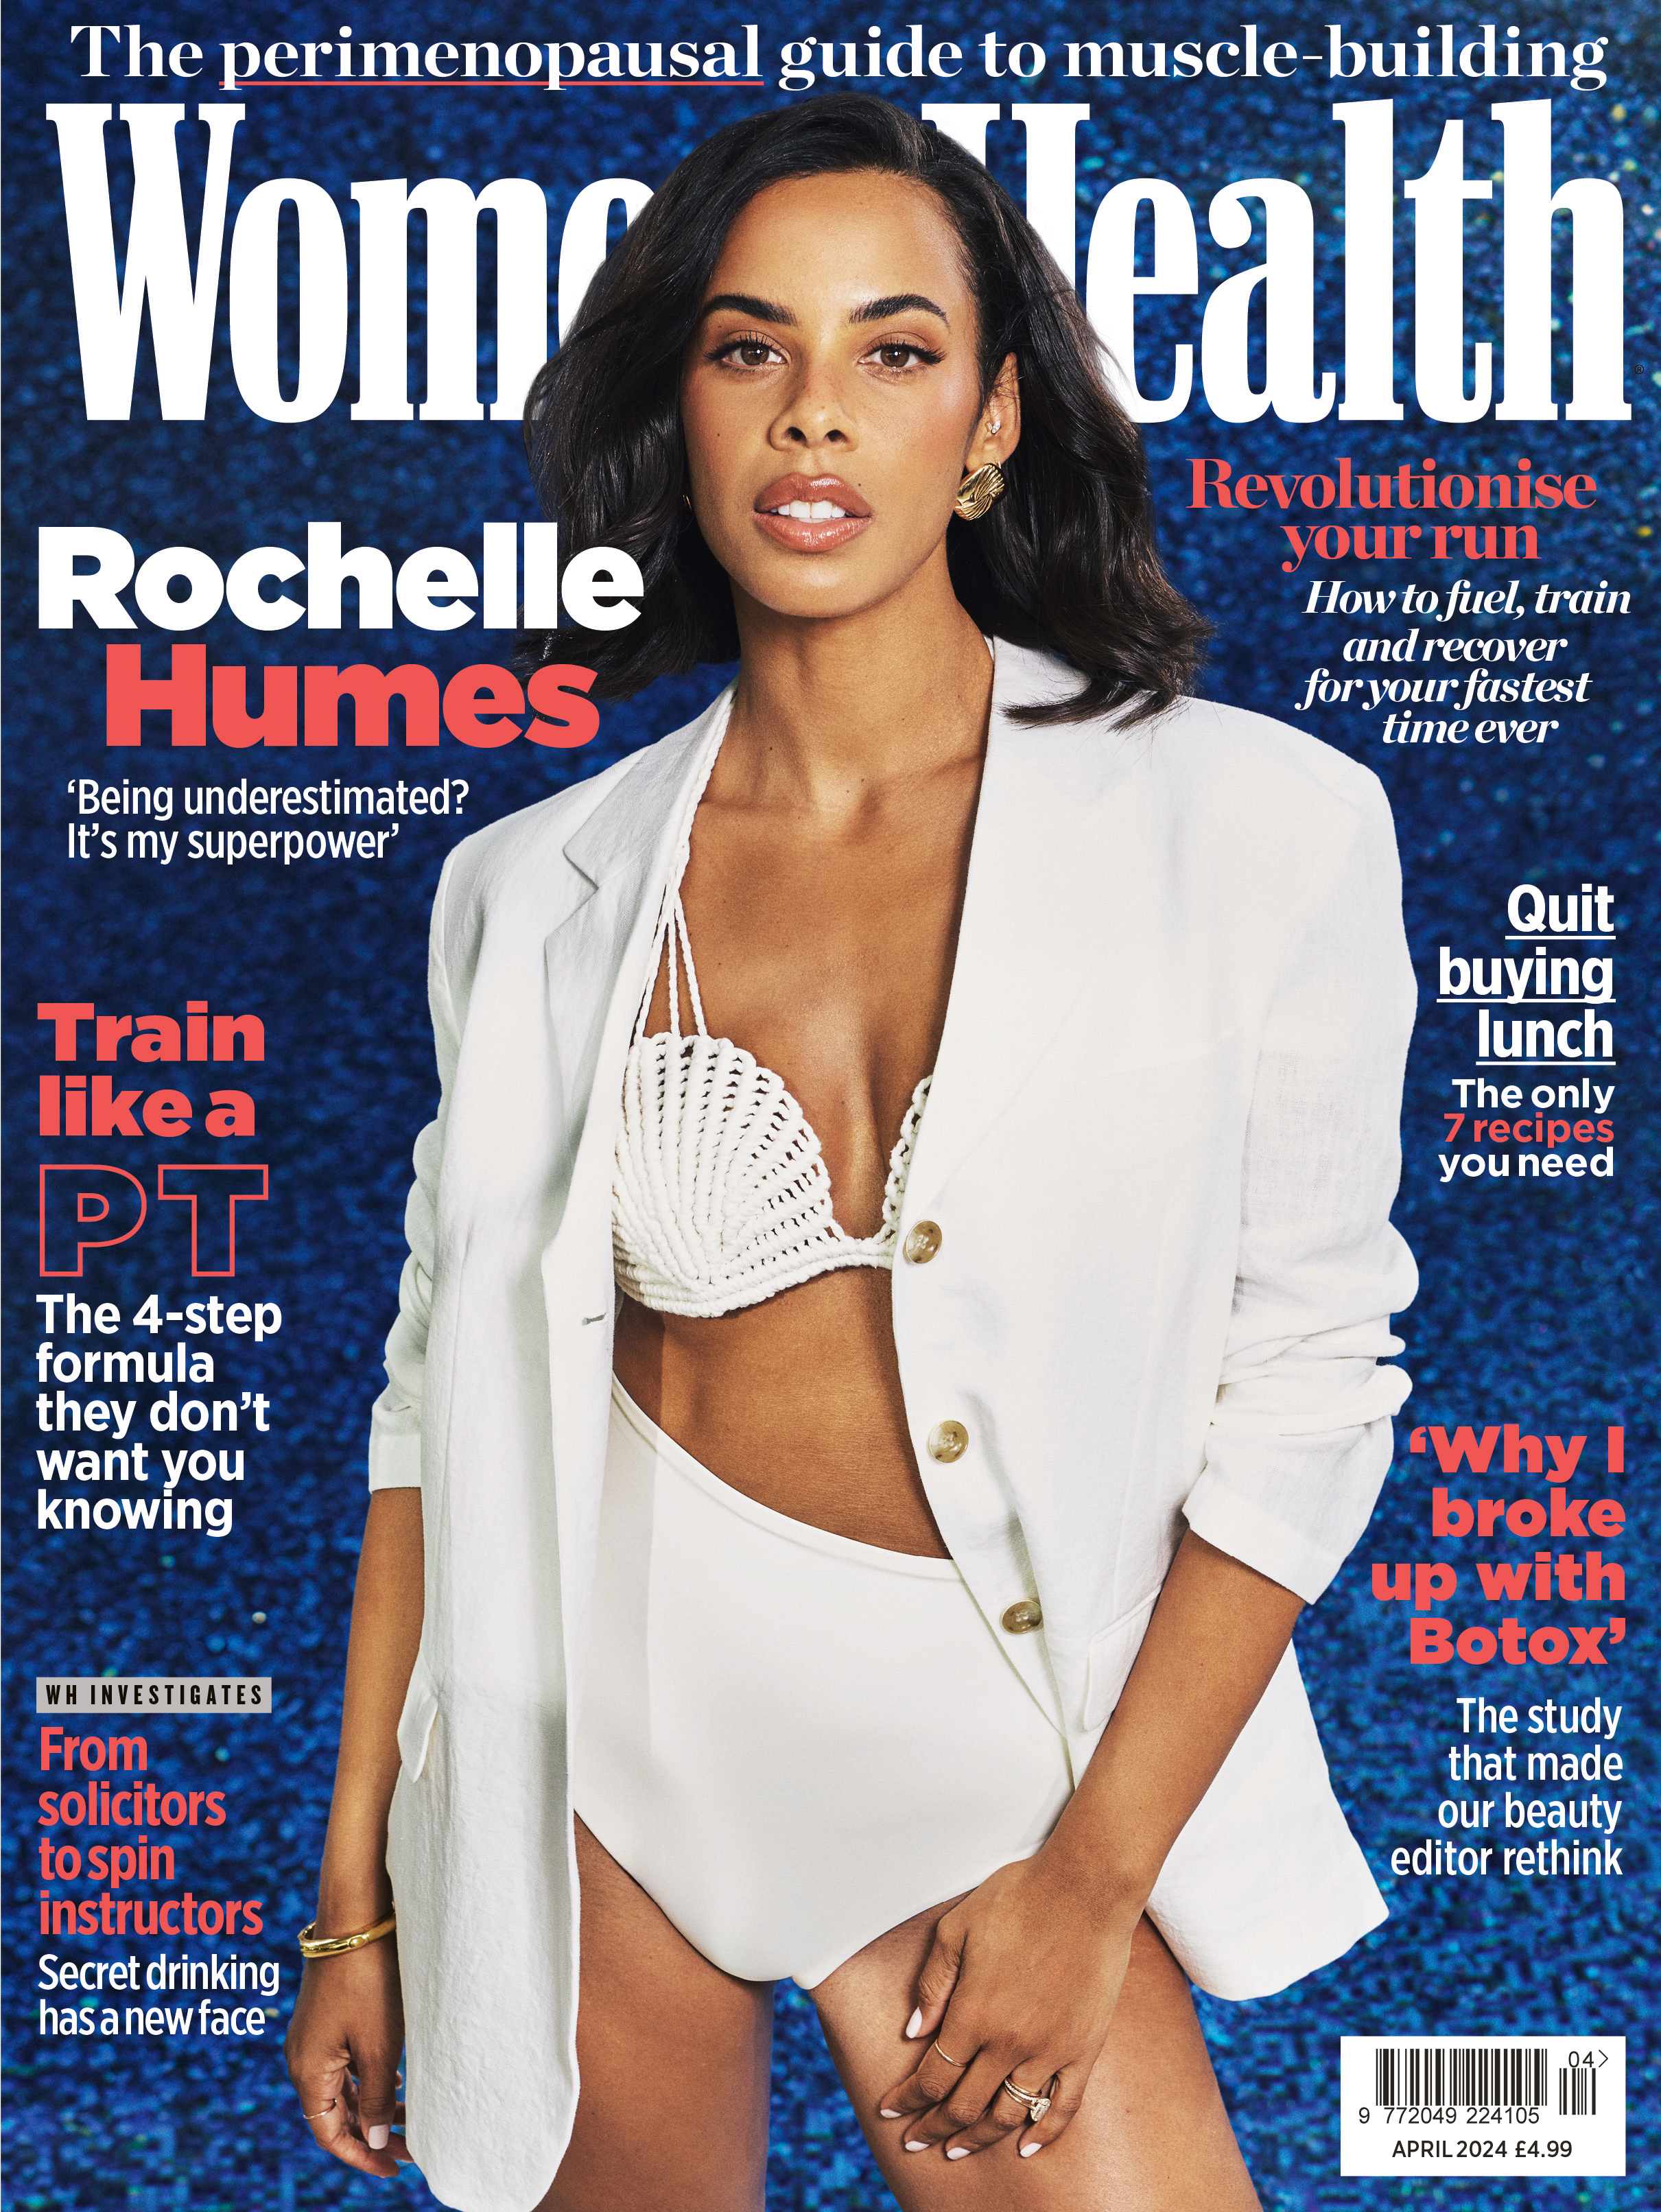 Das vollständige Interview mit Rochelle kann in der April-Ausgabe von Women's Health UK gelesen werden